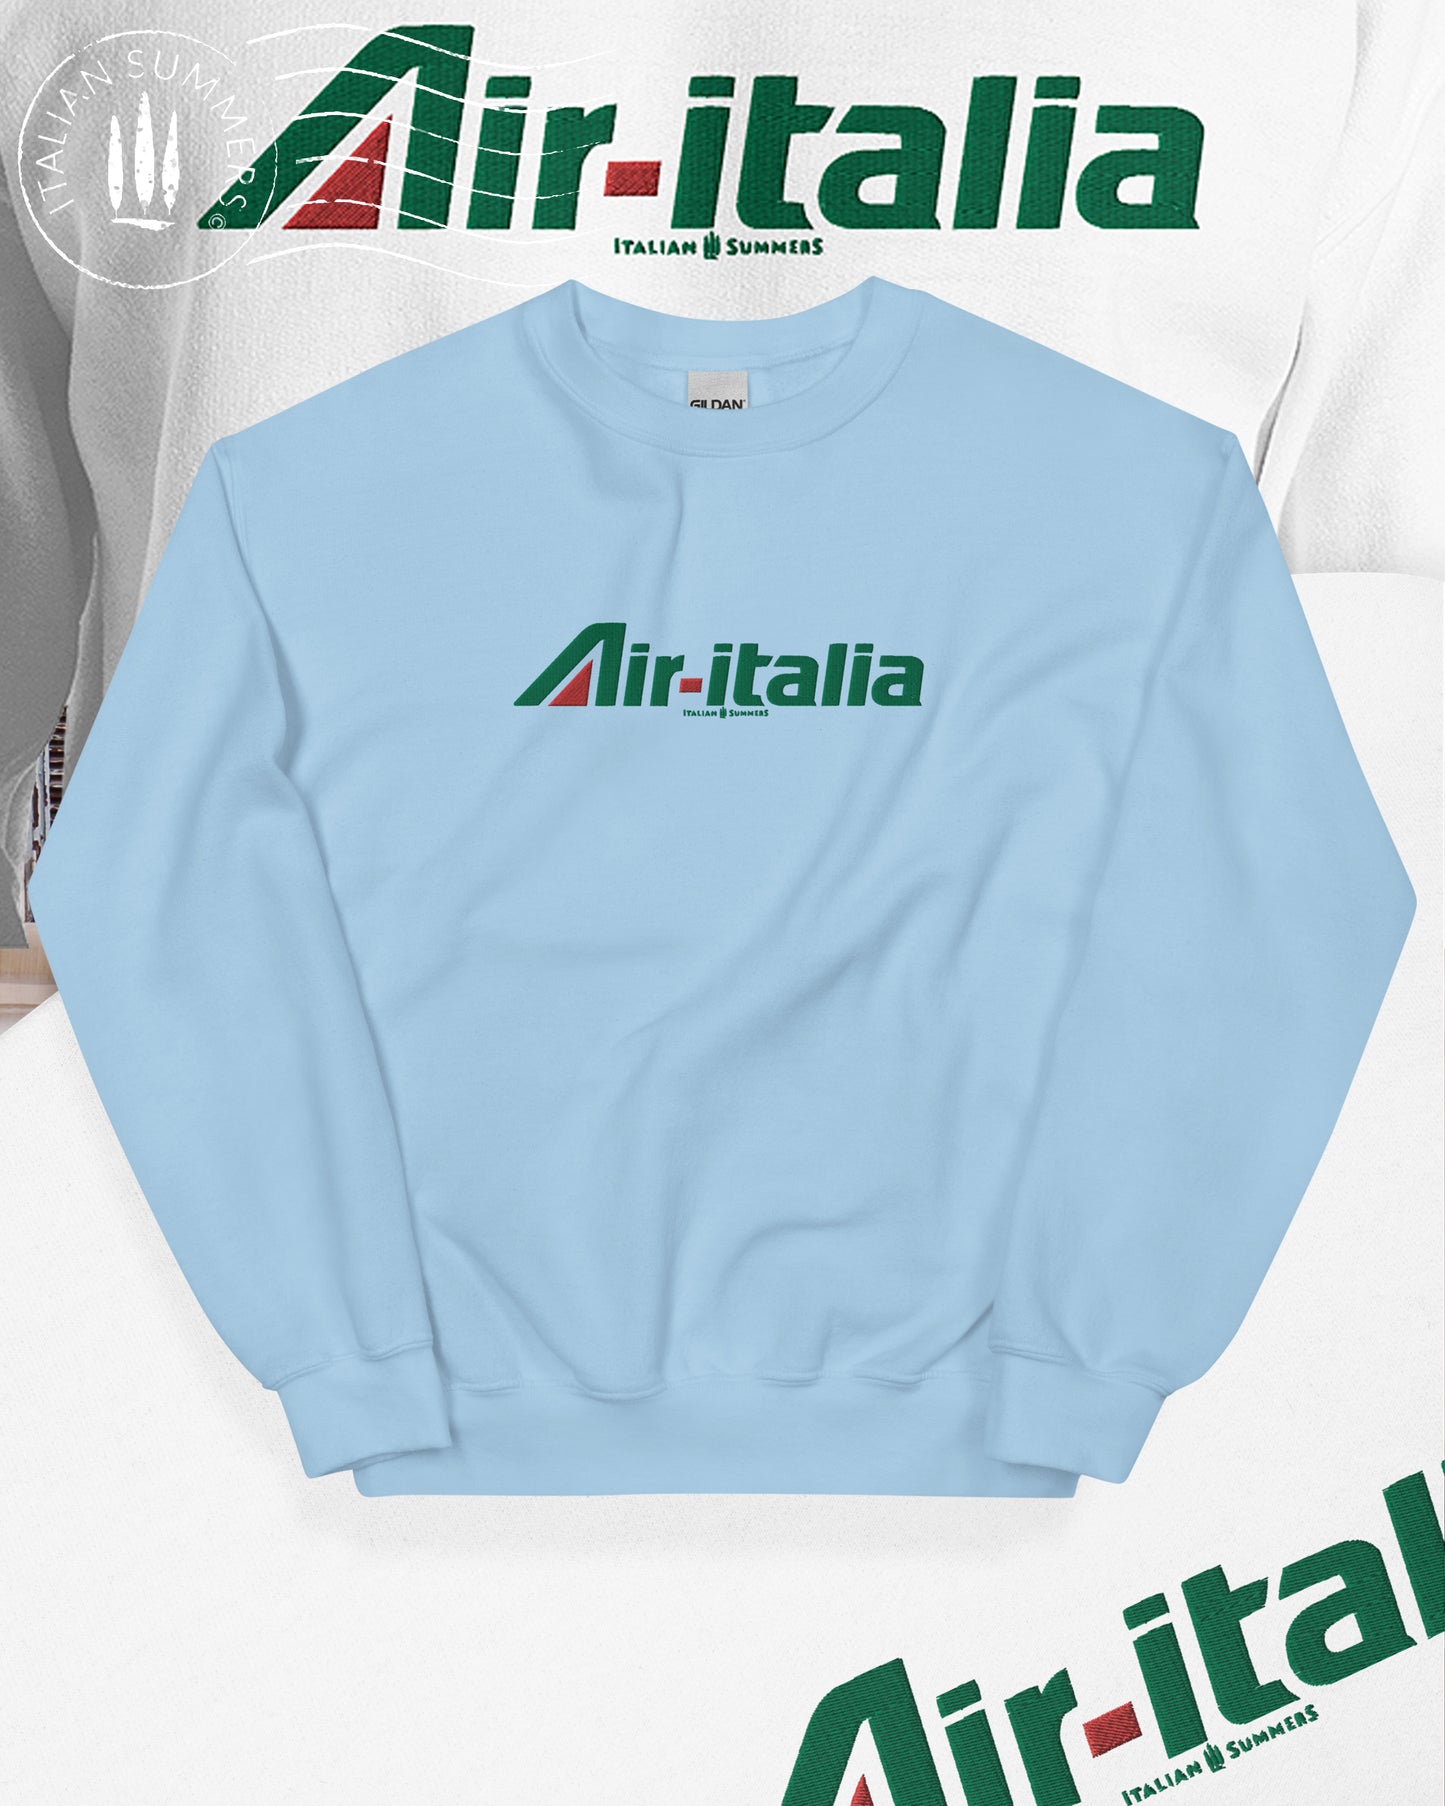 Embroidered Sweatshirt AIR ITALIA, Italy traveler, Italian retrostalgia, Italy vacation, Italian Air travel, Italy.